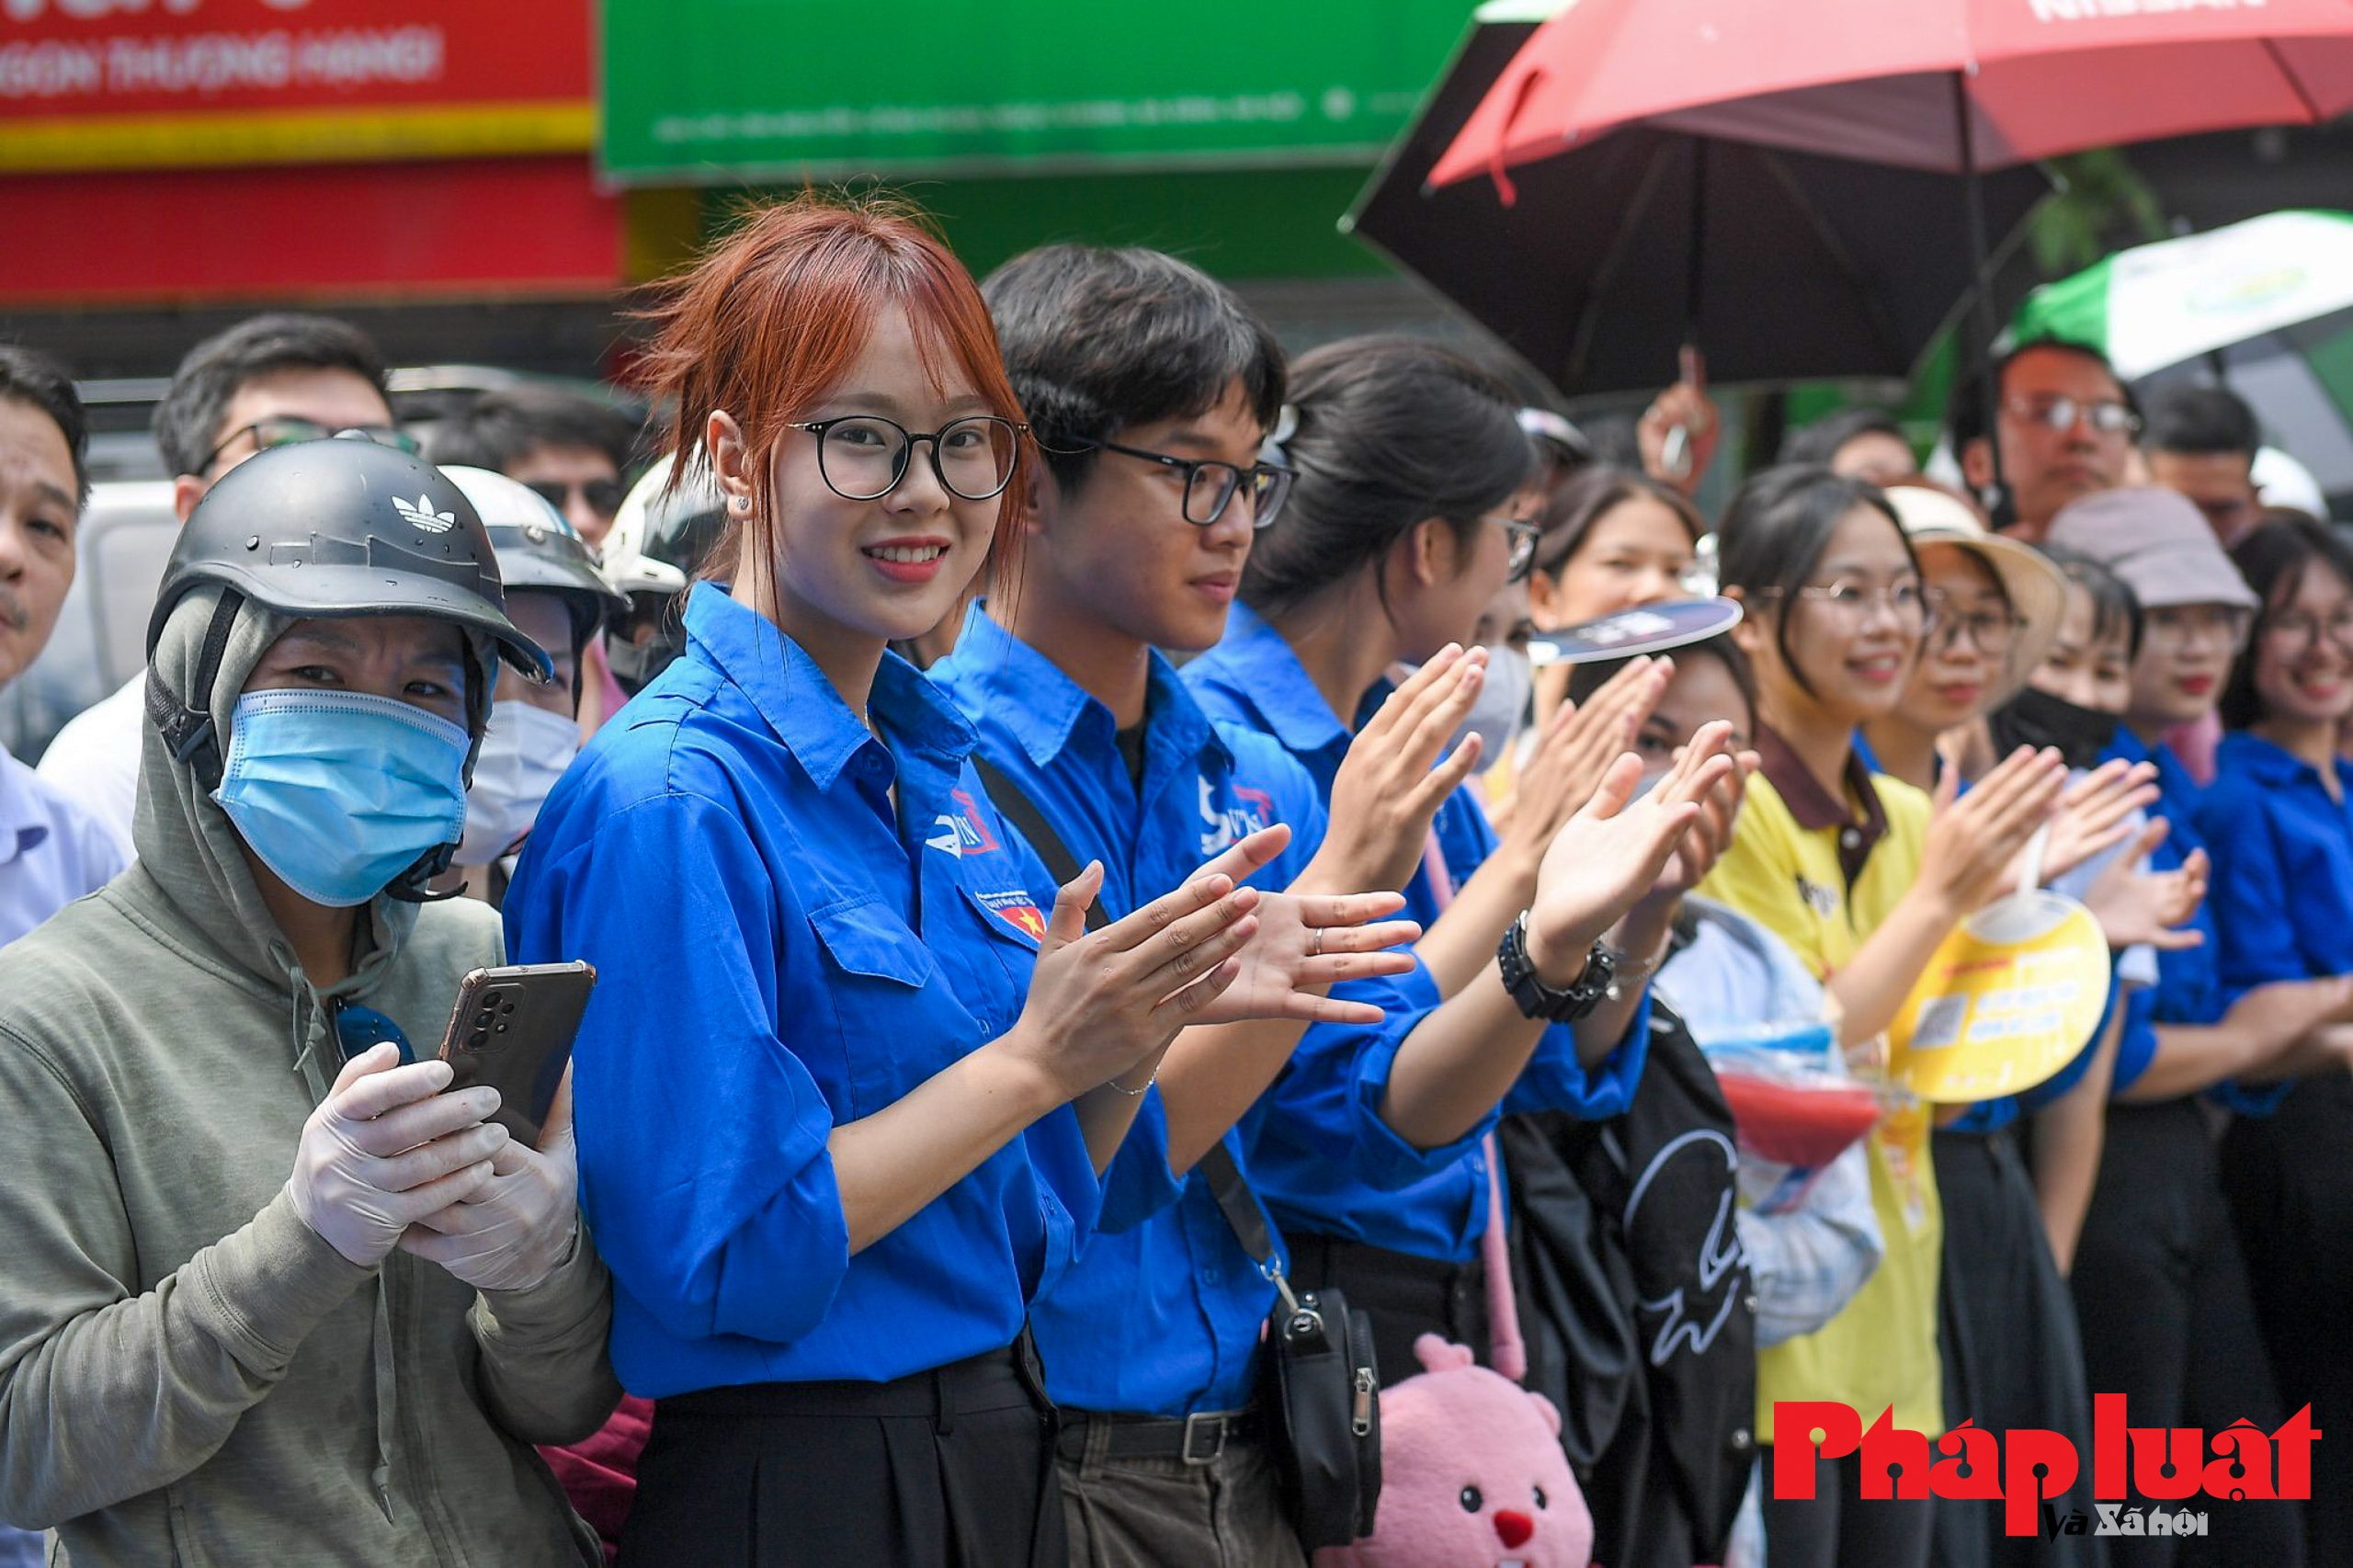 Màu áo xanh tình nguyện phủ kín 196 điểm thi tại Hà Nội